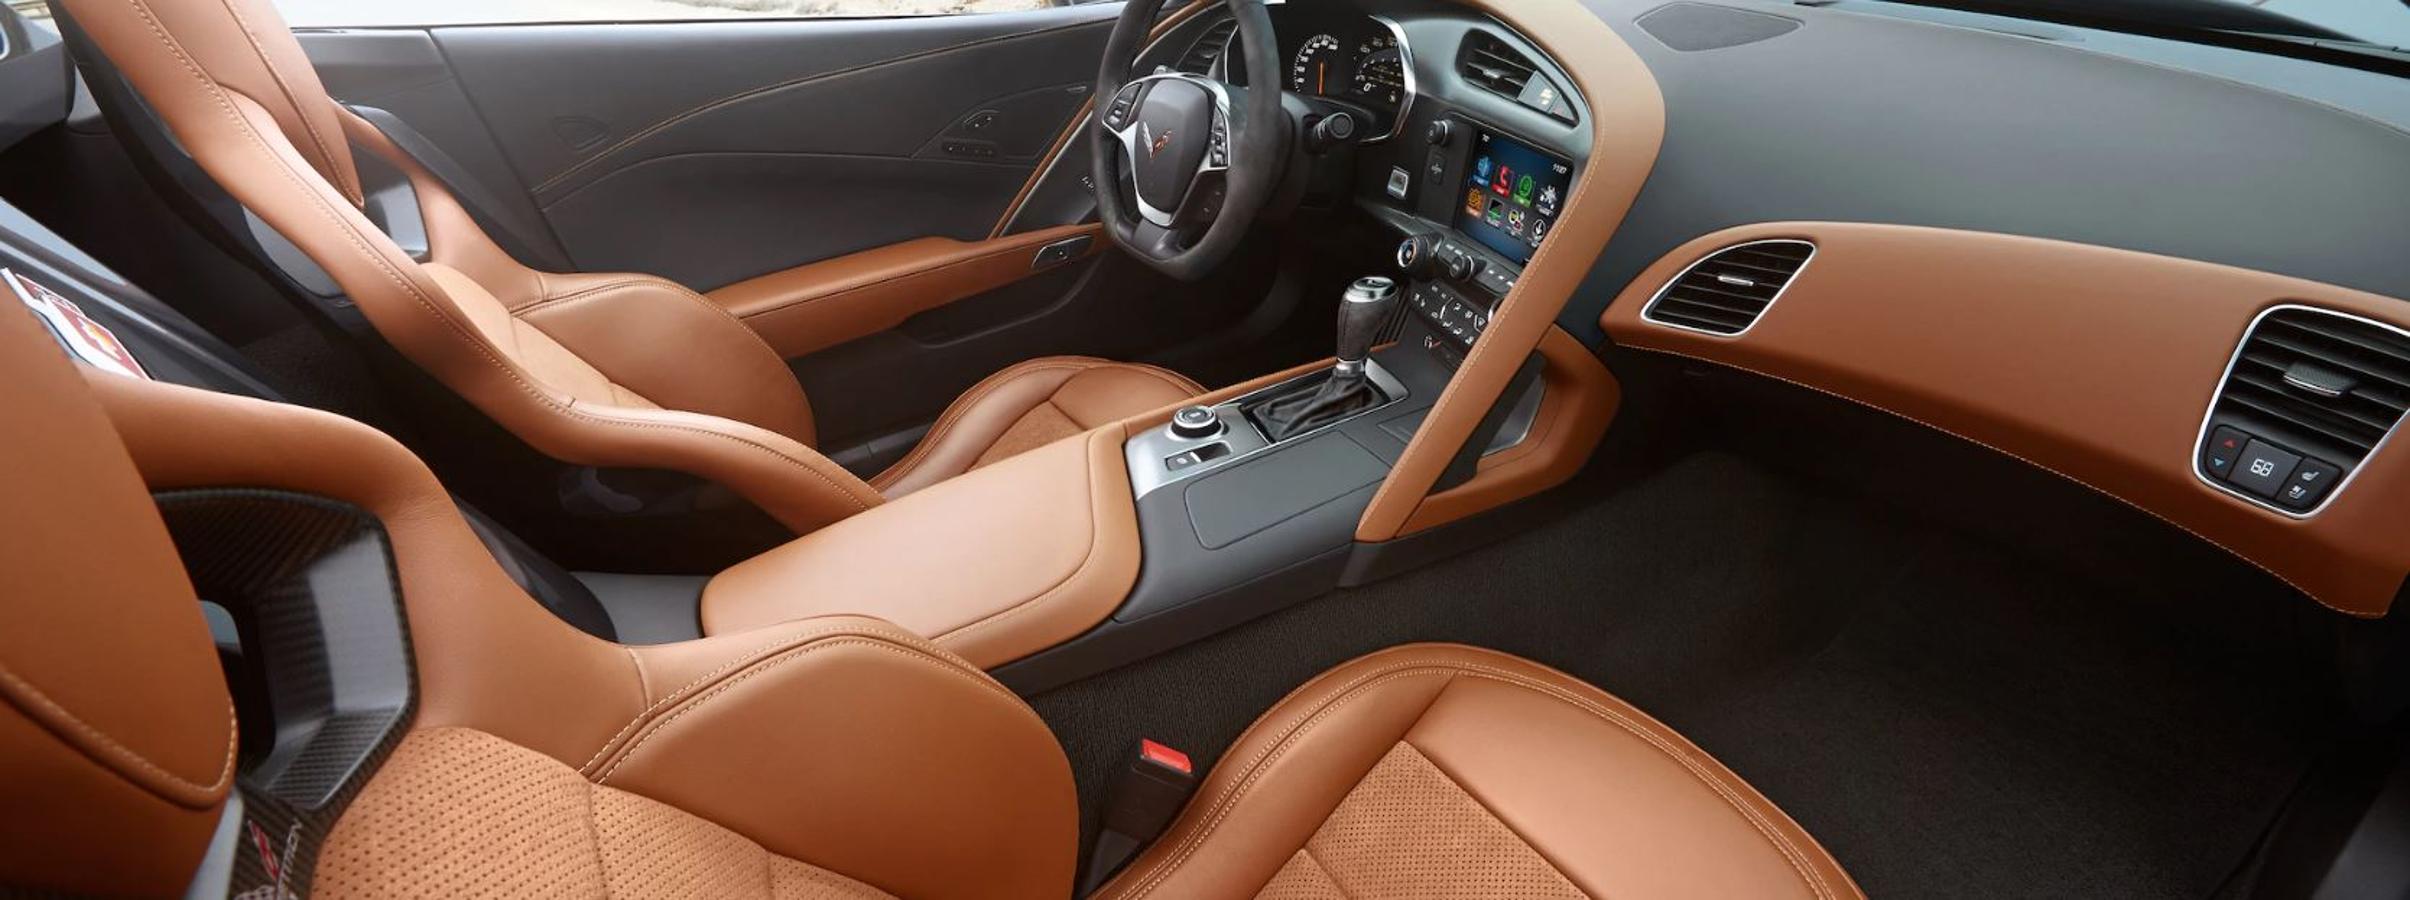 Chevrolet Corvette. La generación más moderna del Corvette mantiene la esencia de las primeras unidades, aunque convenientemente adaptada a los nuevos tiempos. El motor de la variante Stingray, la más asequible, es un enorme V8 gasolina de 6.2 litros que otorga una potencia de 466 CV a un régimen de 6000 rpm